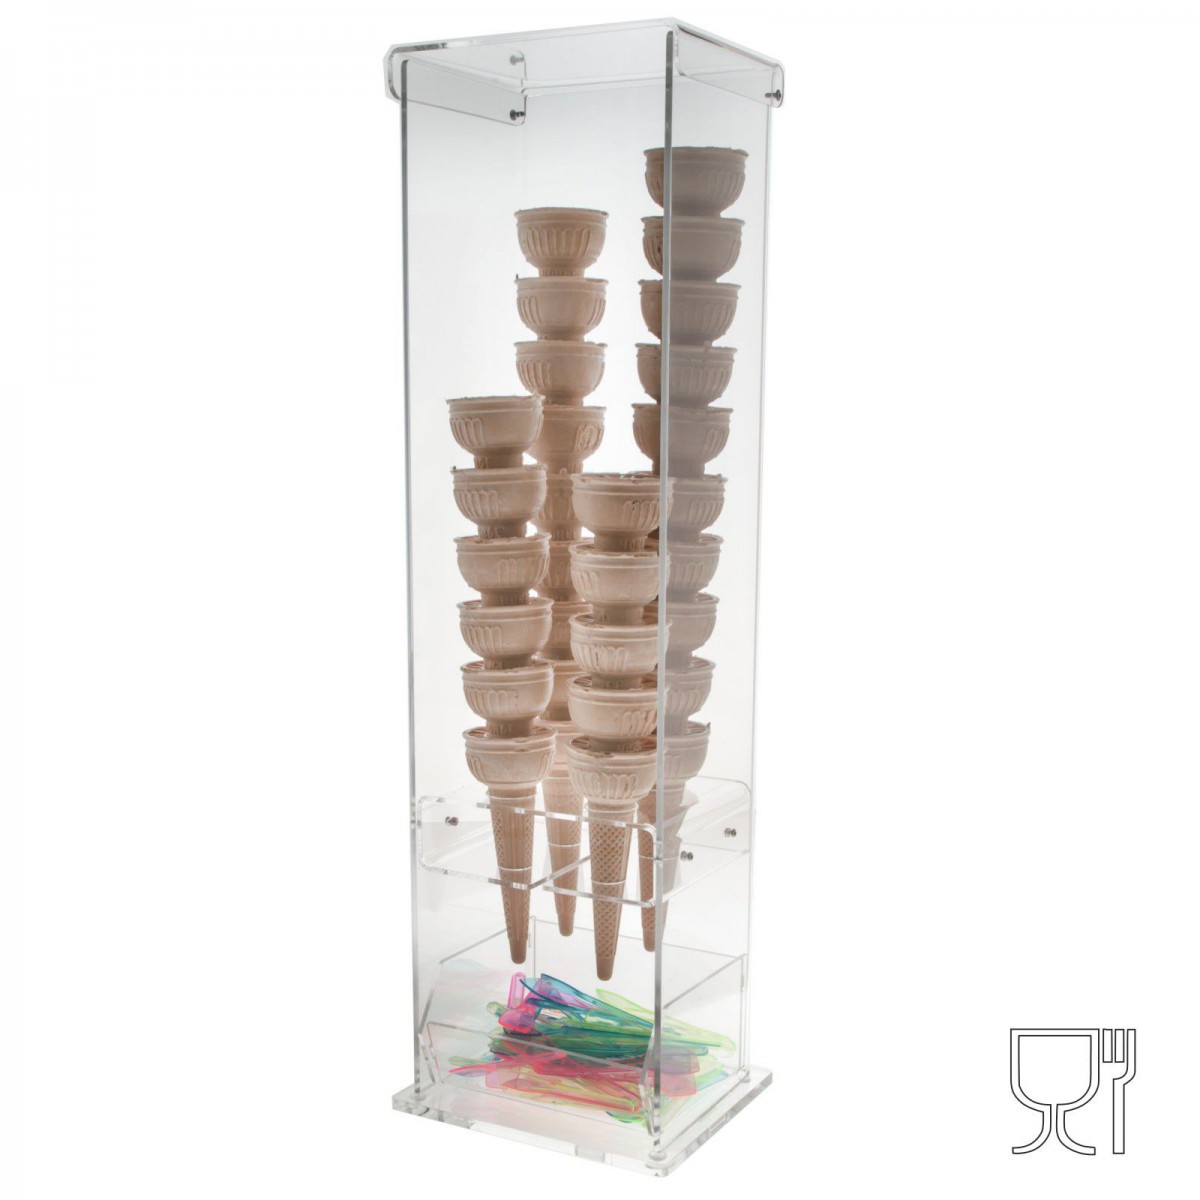 Expositor para conos de helado con compartimento para cucharillas